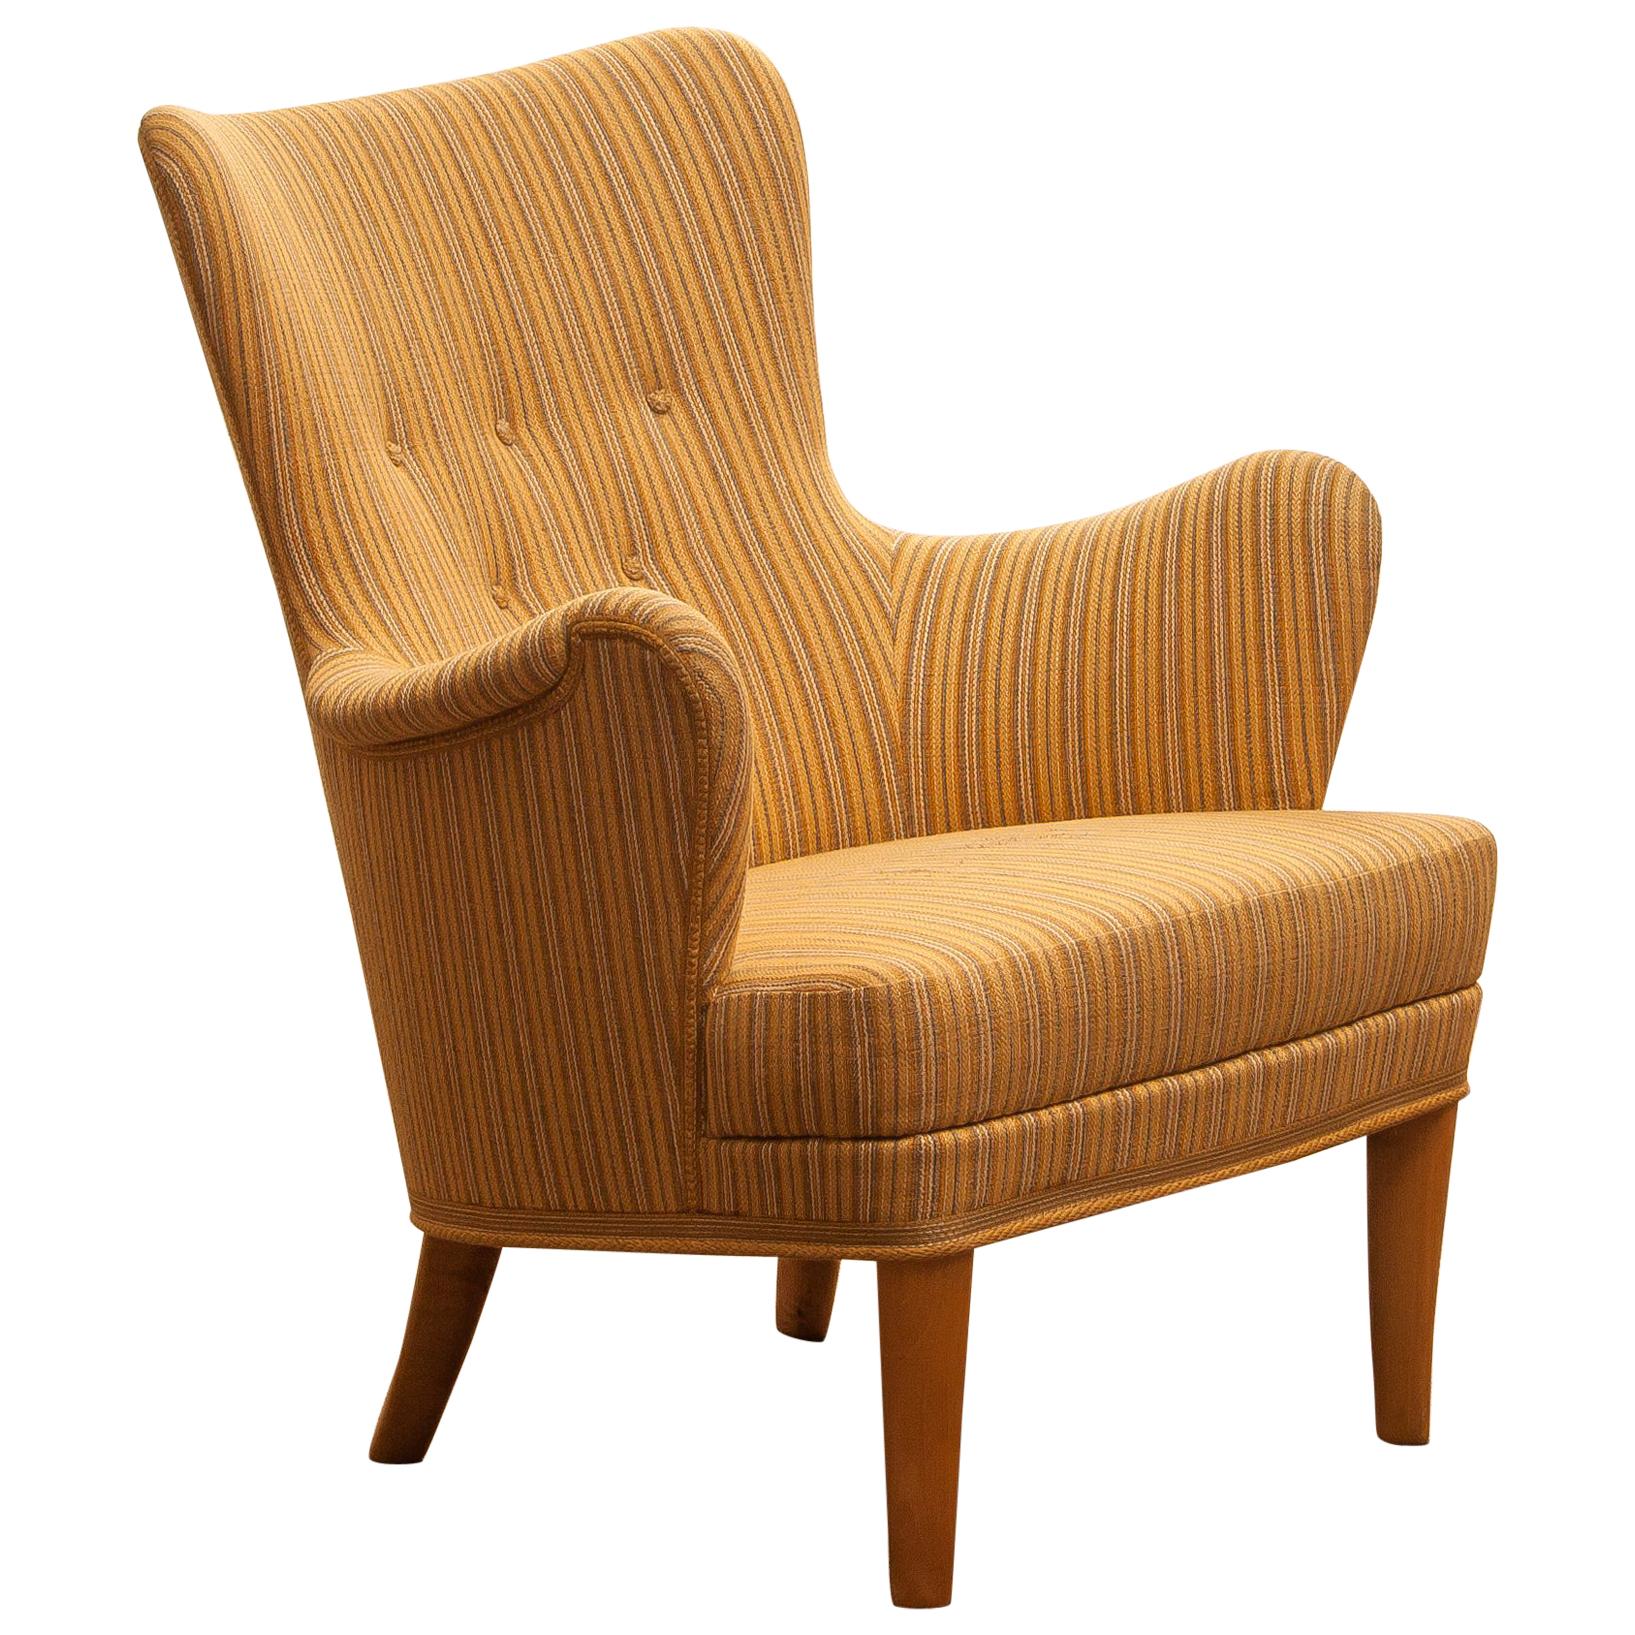 Easy Arm Lounge Chair "Gävle" by Carl Malmsten for Oh Sjogren, 1950s